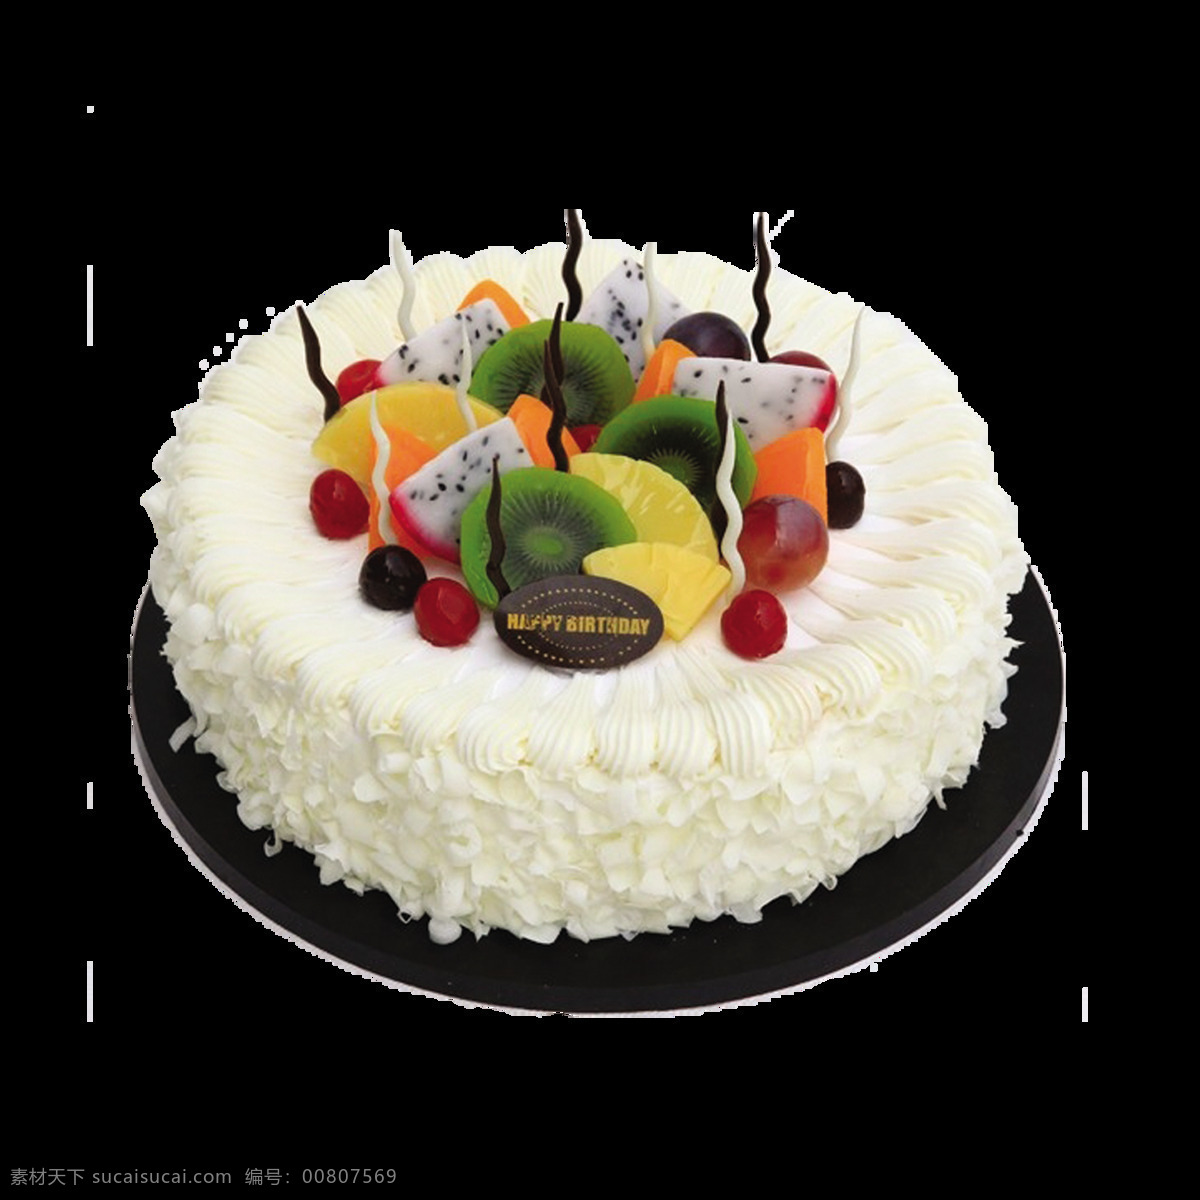 白色 水果 蛋糕 元素 蛋糕模型 节日蛋糕 美味蛋糕 甜点